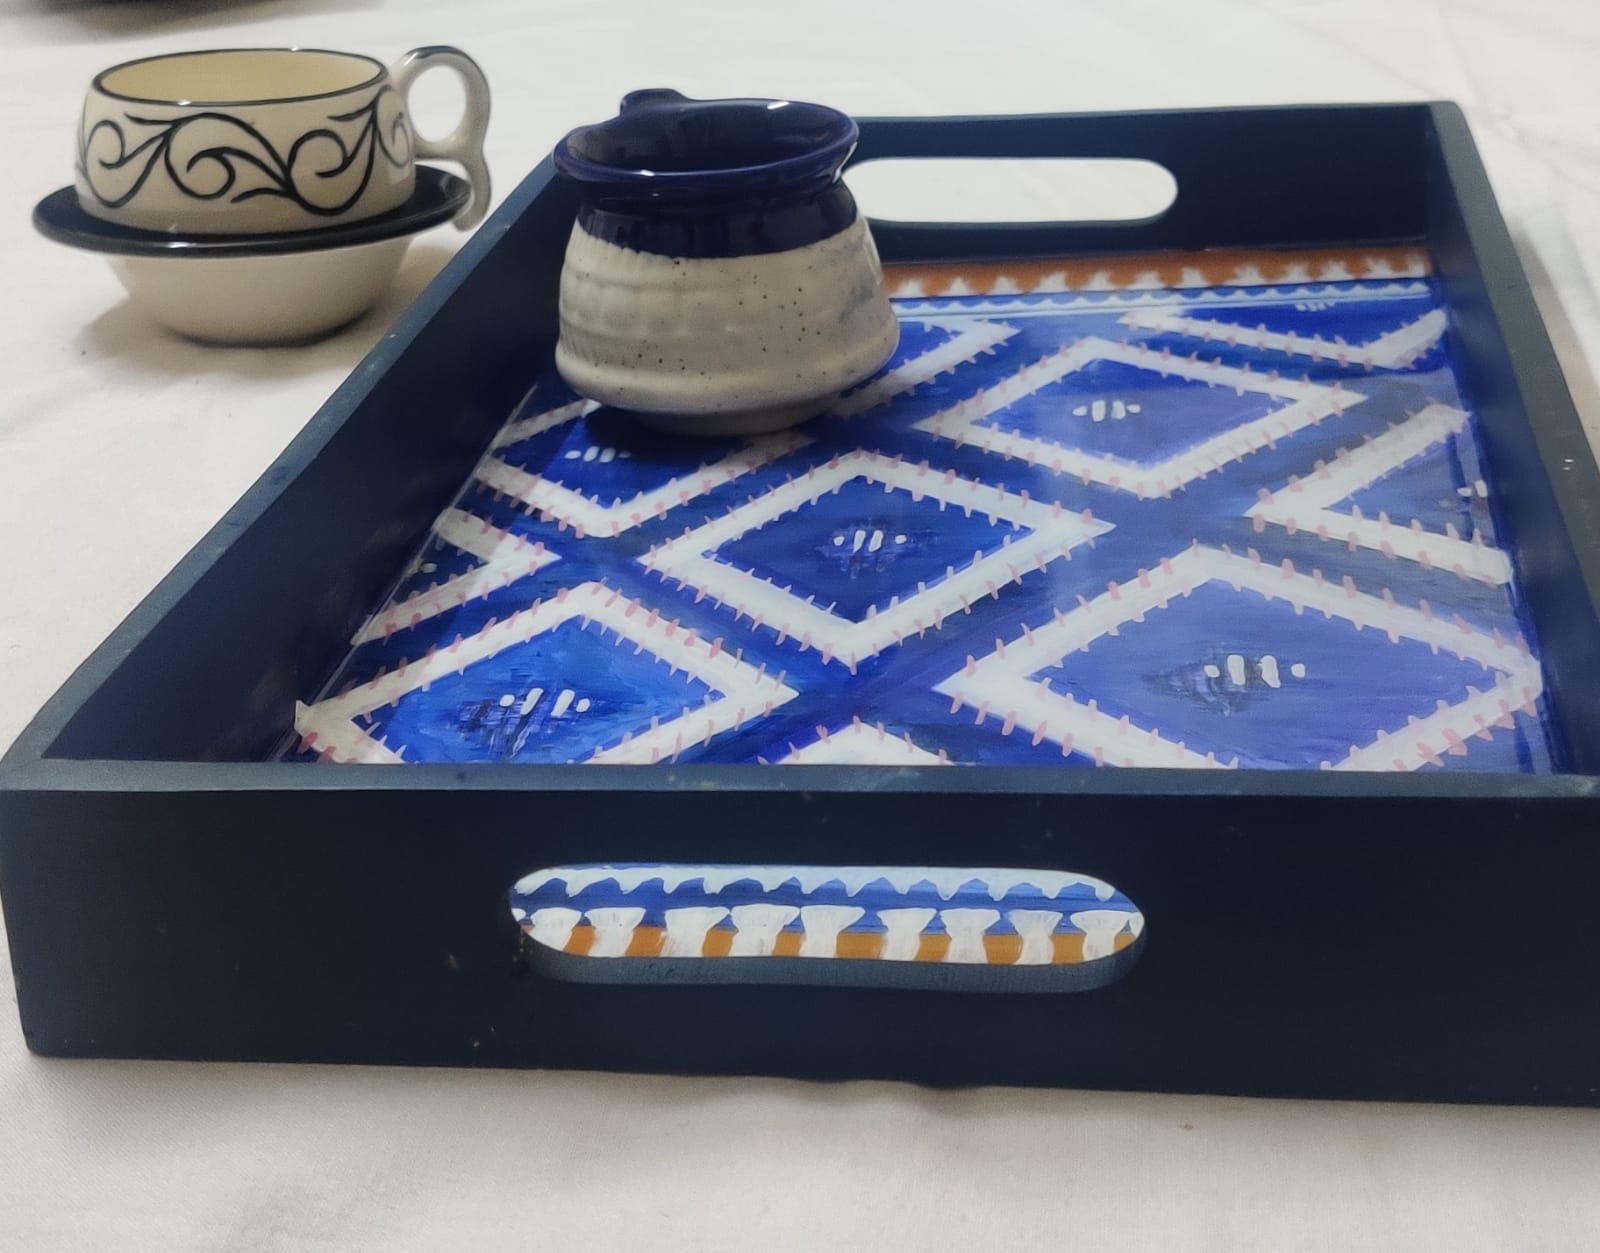 Iquat carpet design resin tray